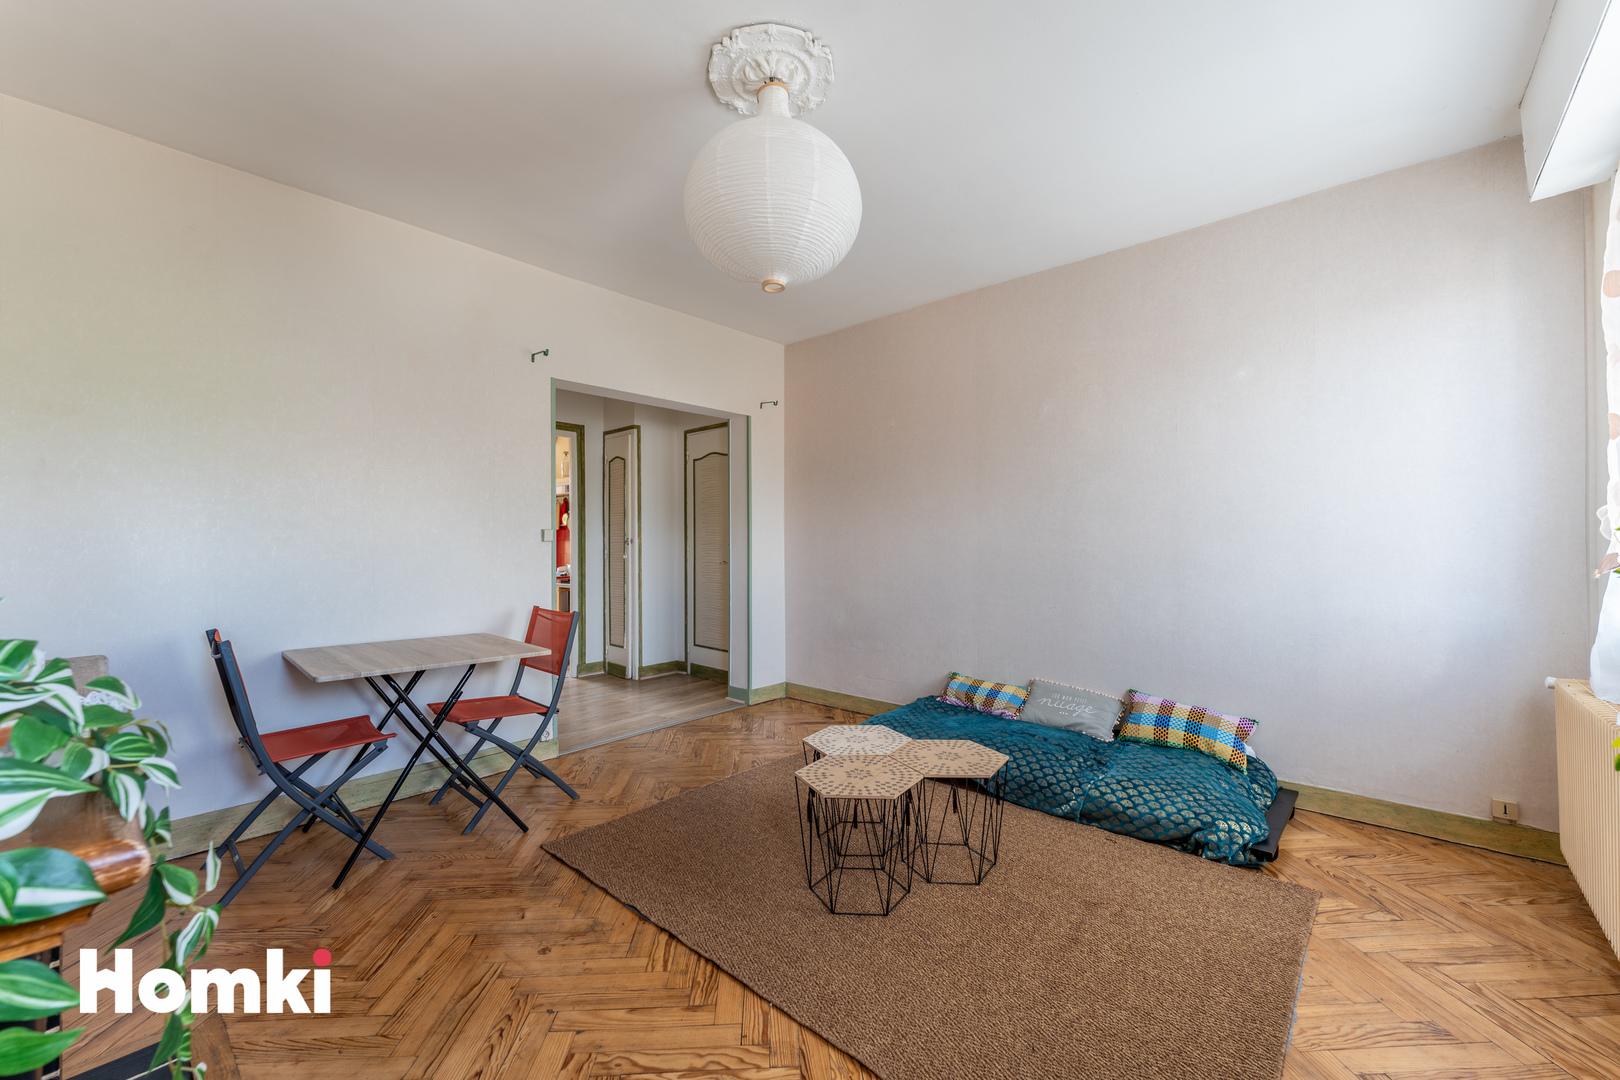 Homki - Vente Appartement  de 58.0 m² à Bordeaux 33300